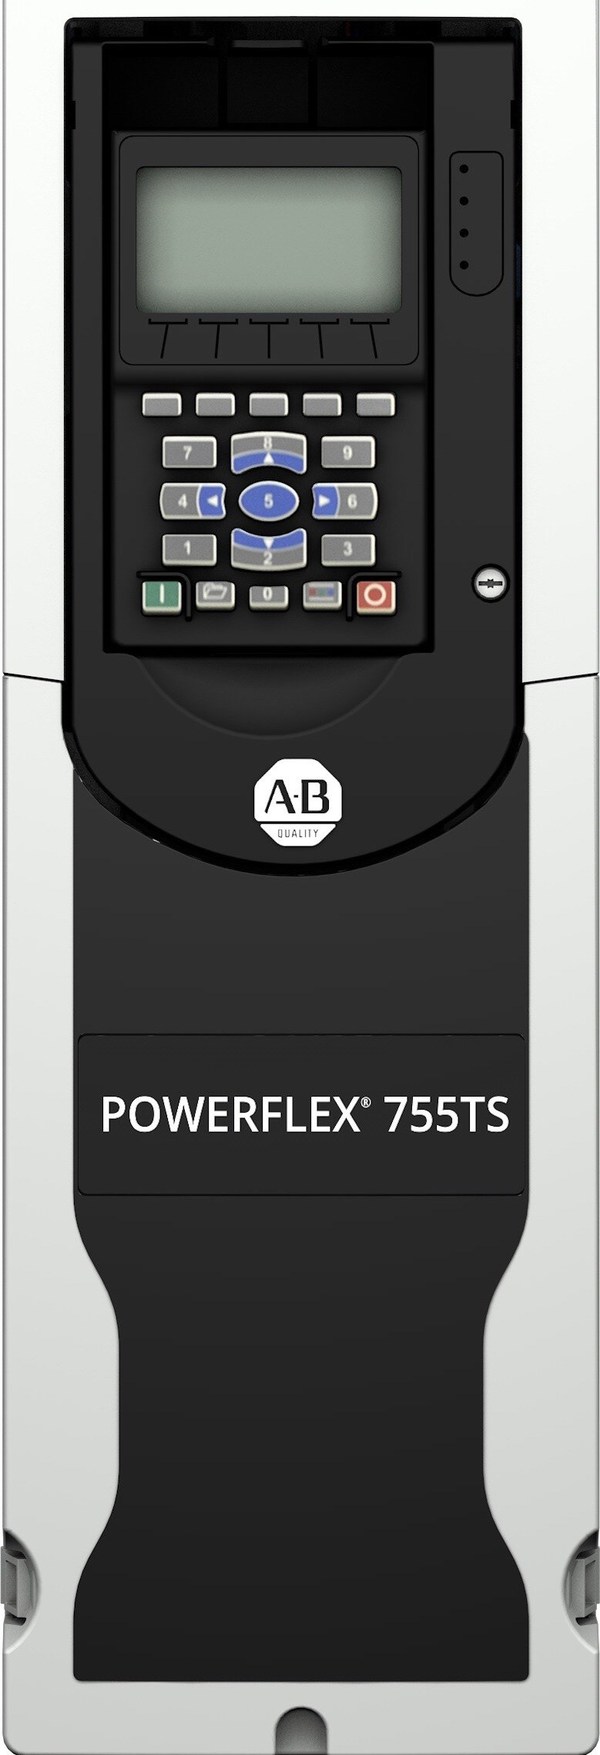 罗克韦尔自动化新一代智能变频器PowerFlex 755TS在亚太地区上市